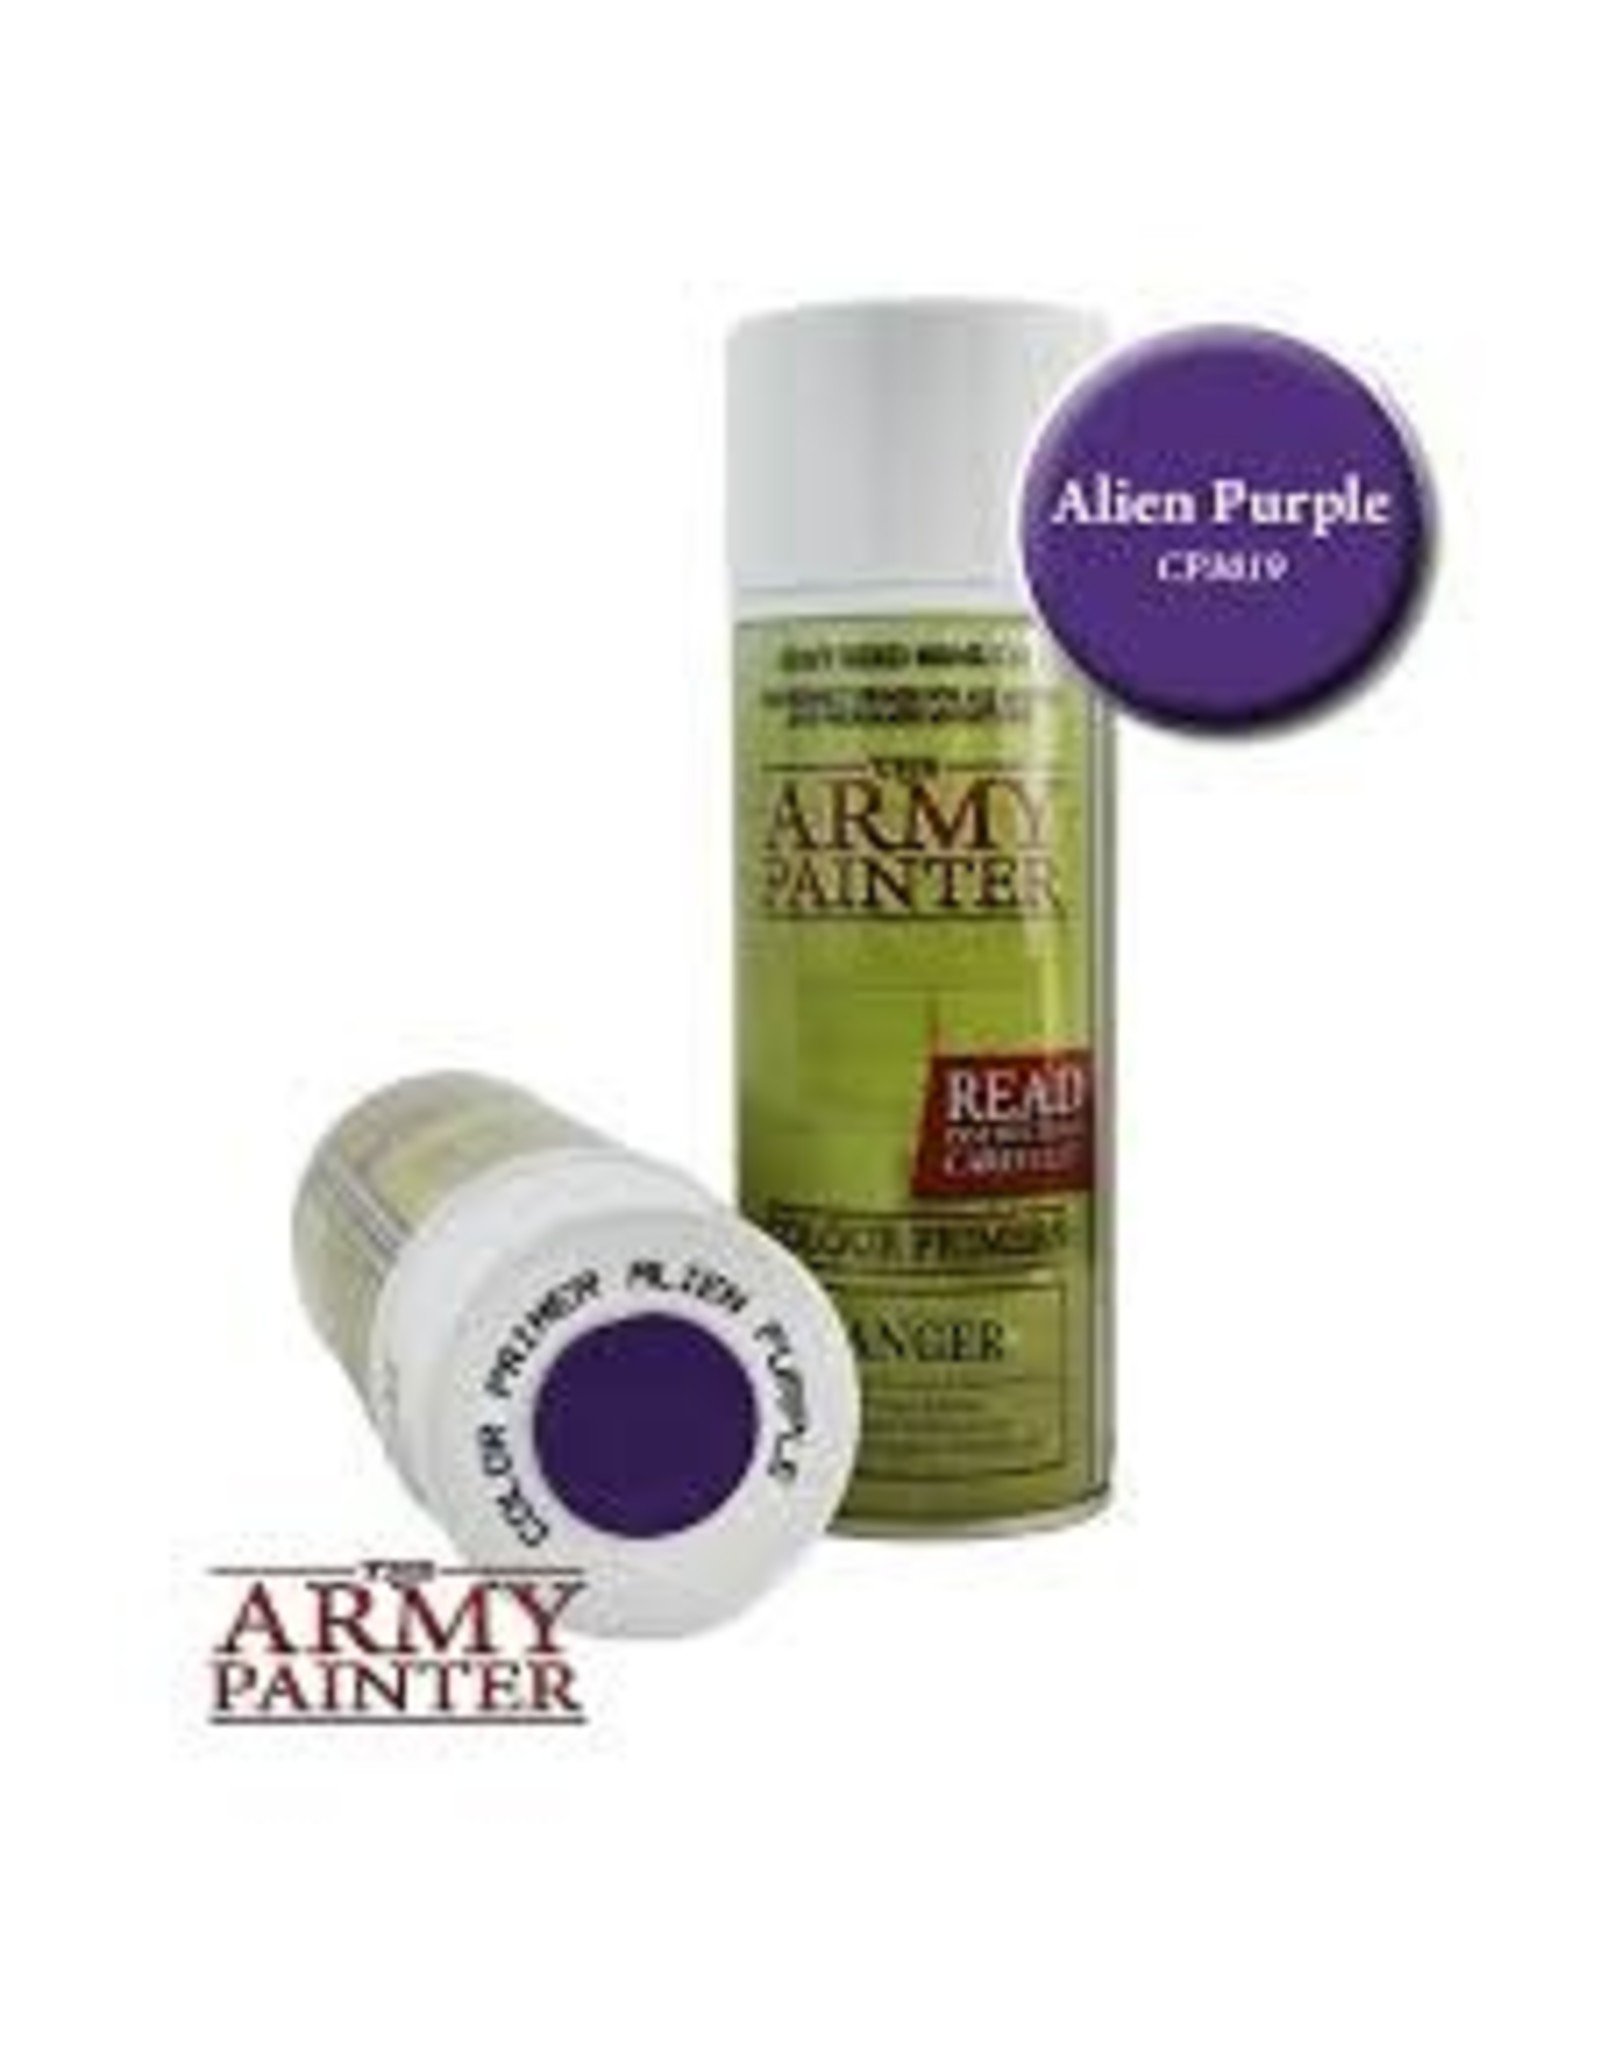 Army Painter Color Primer: Alien Purple